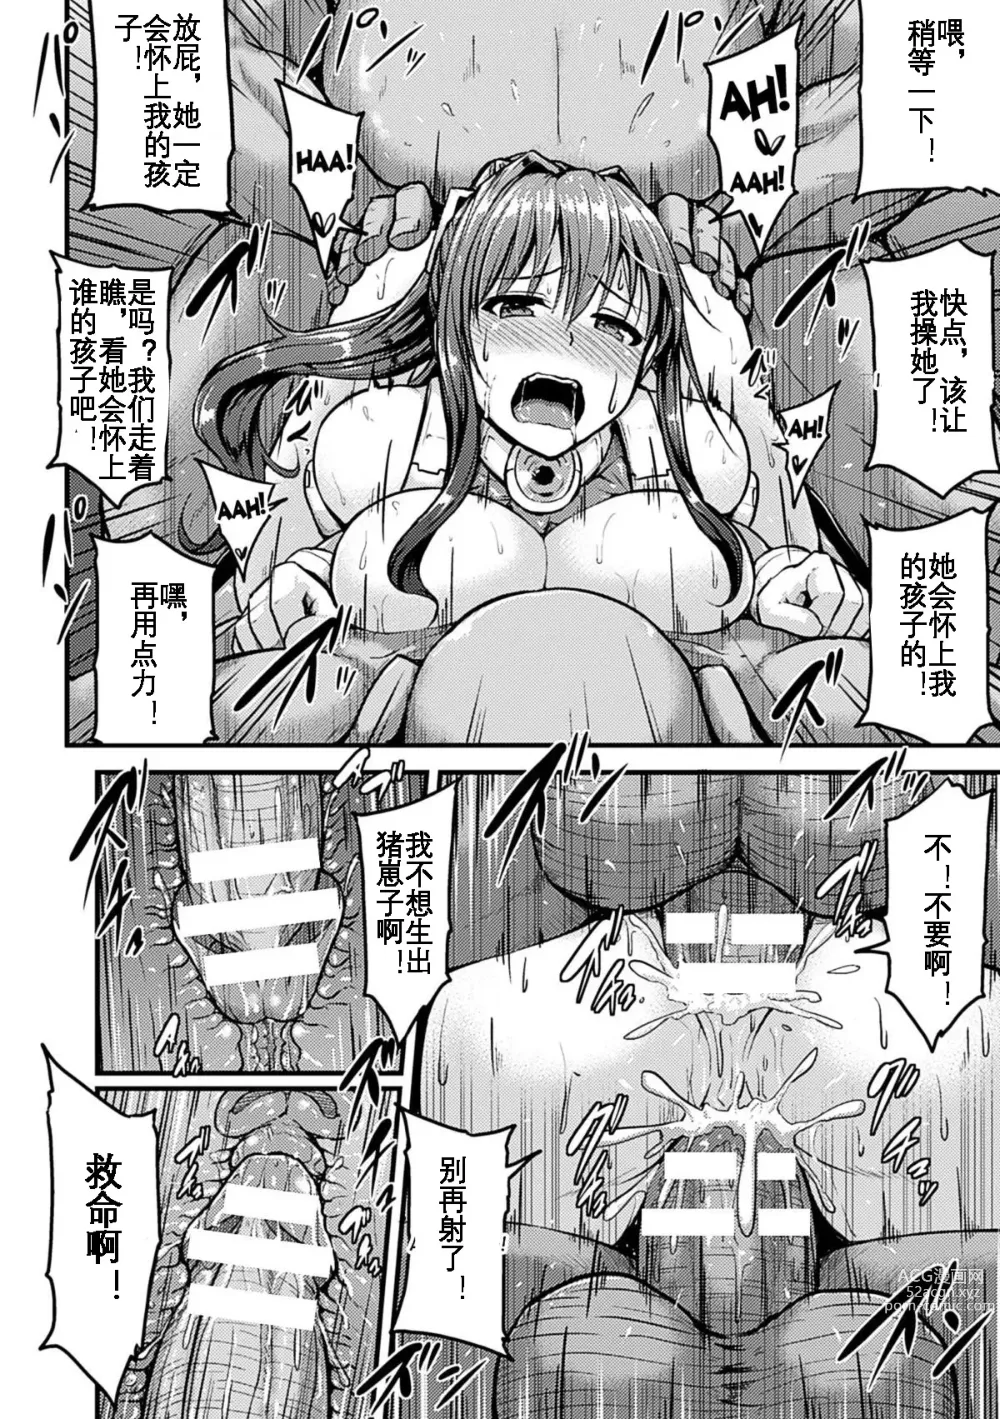 Page 21 of manga Irisraker Buta no Ko o Haramu Seigi no Senshi